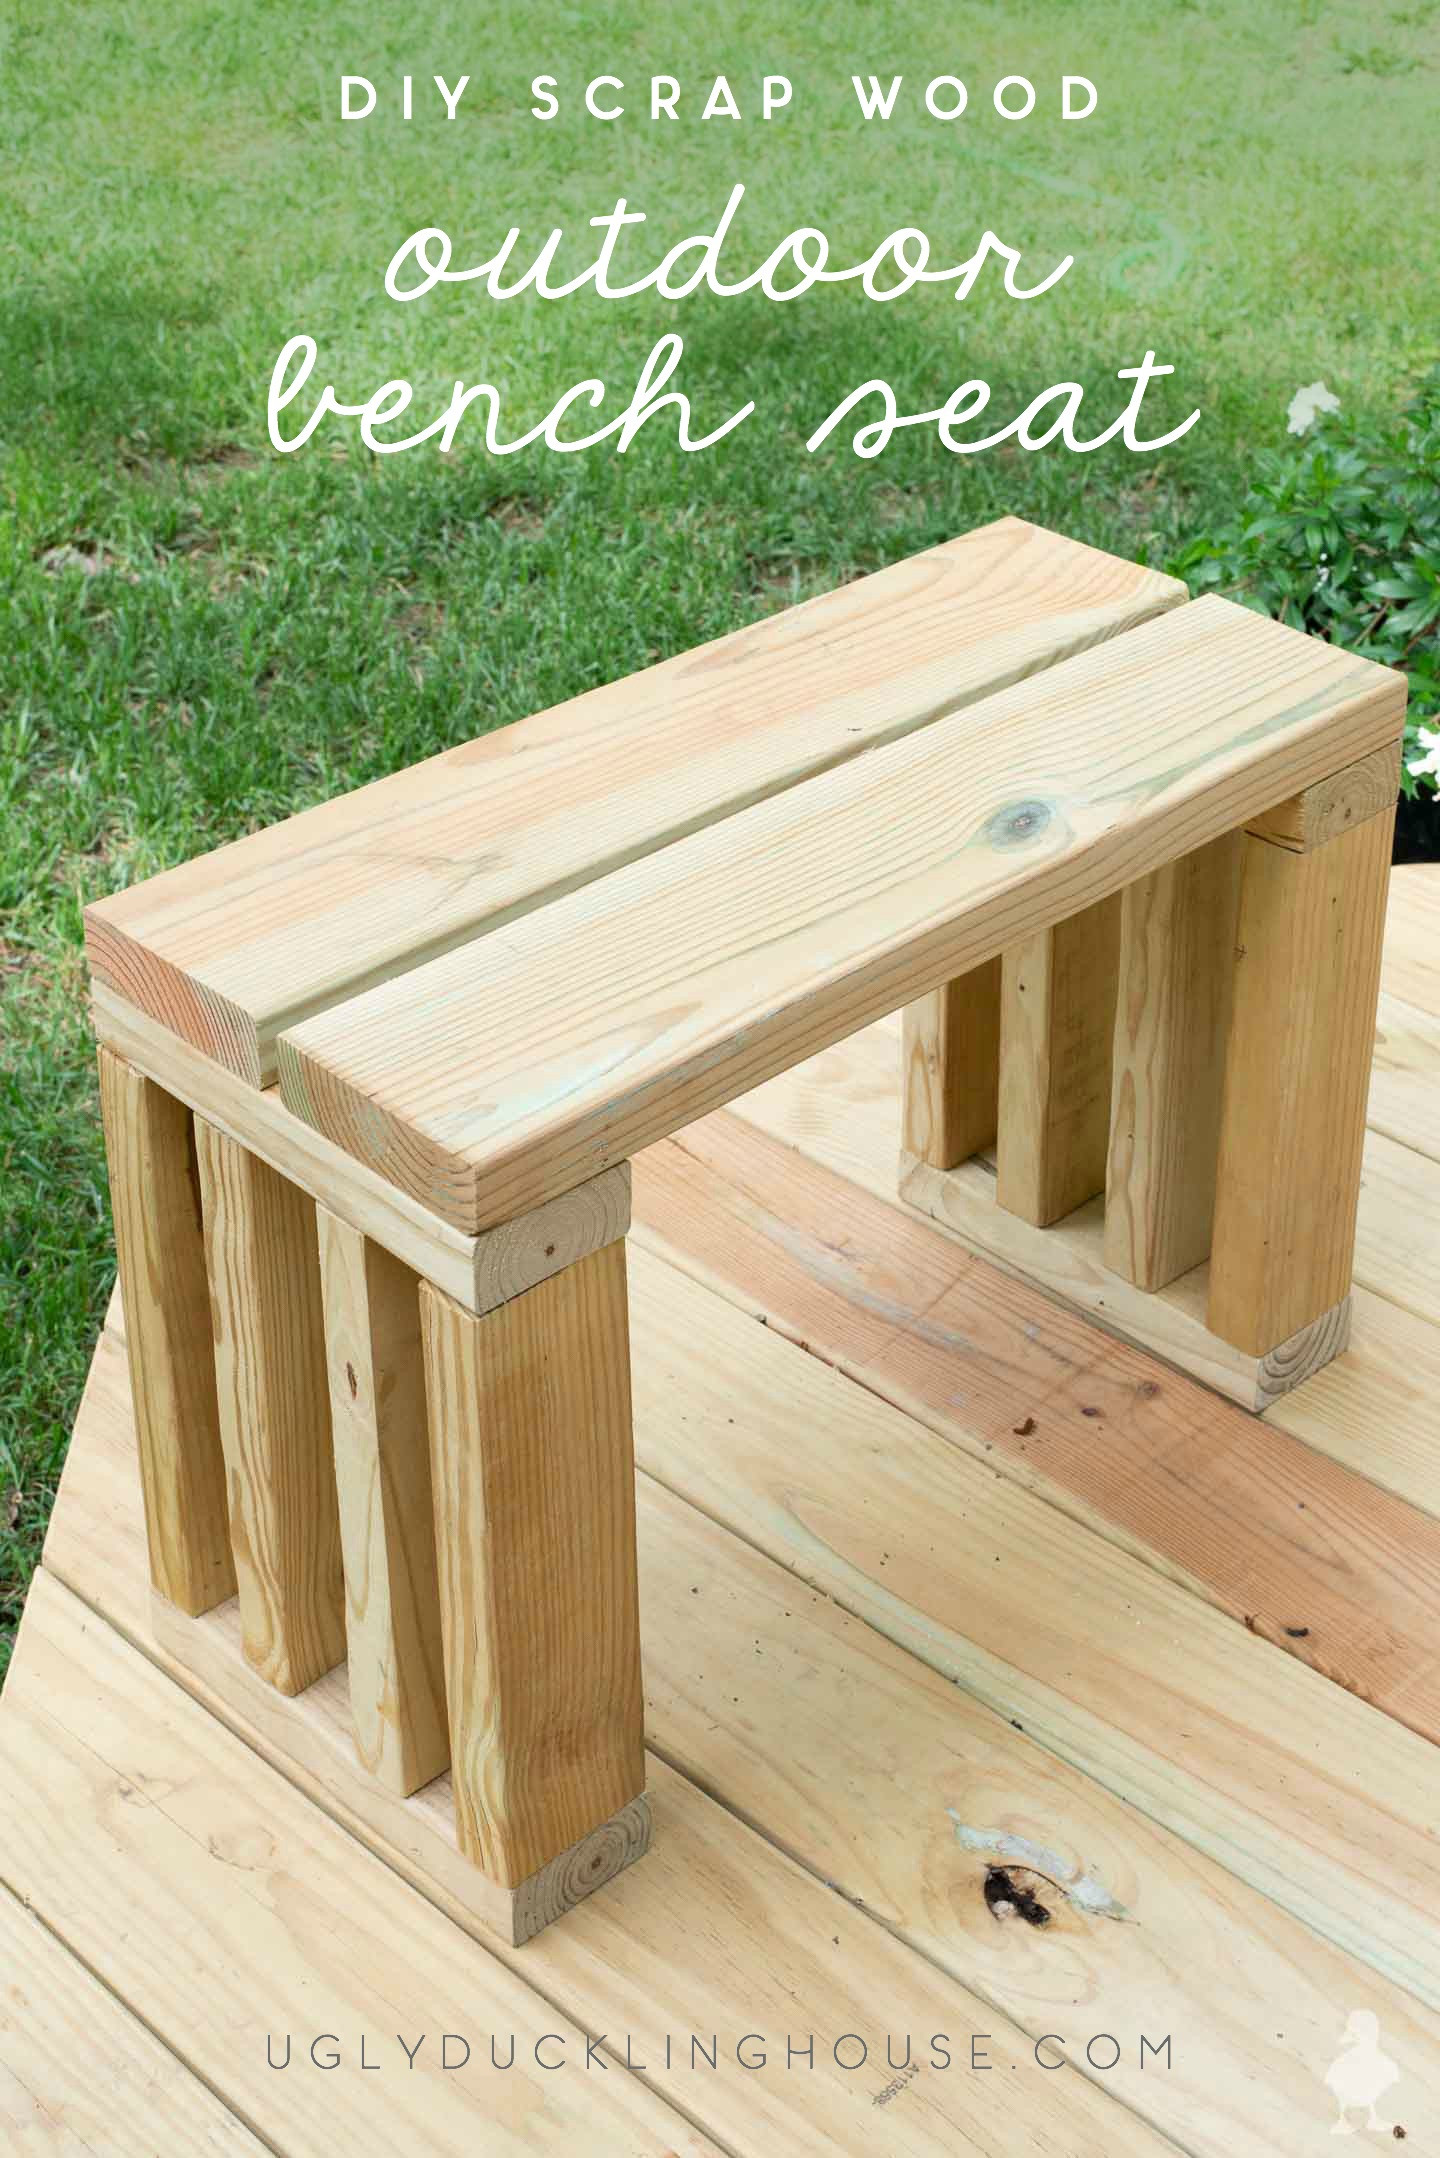 DIY Outdoor Wooden Bench
 Scrap Wood Outdoor Bench Seat